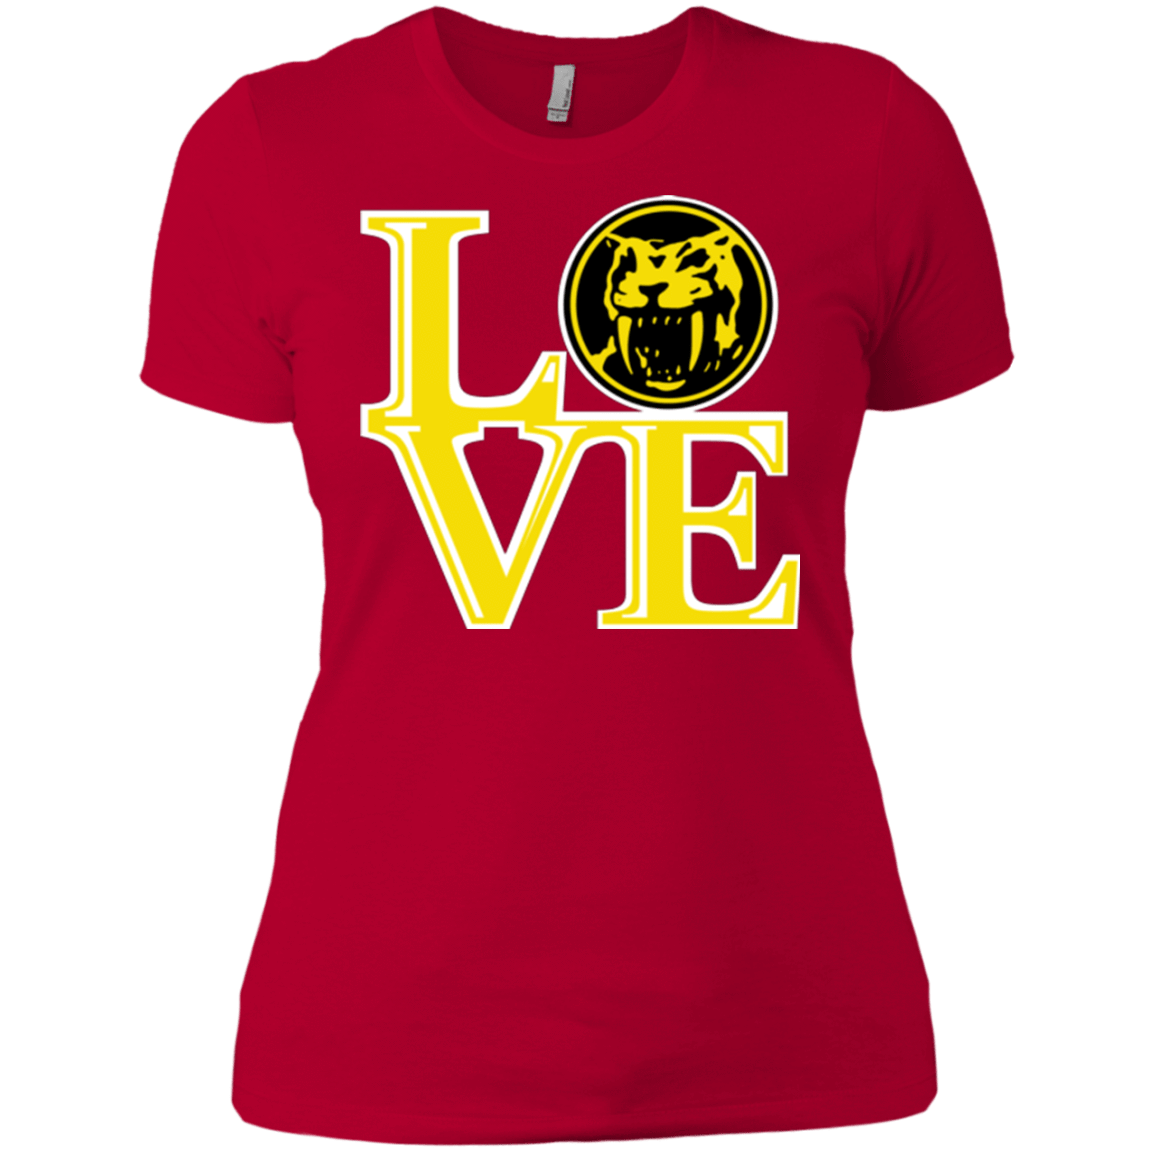 T-Shirts Red / X-Small Yellow Ranger LOVE Women's Premium T-Shirt